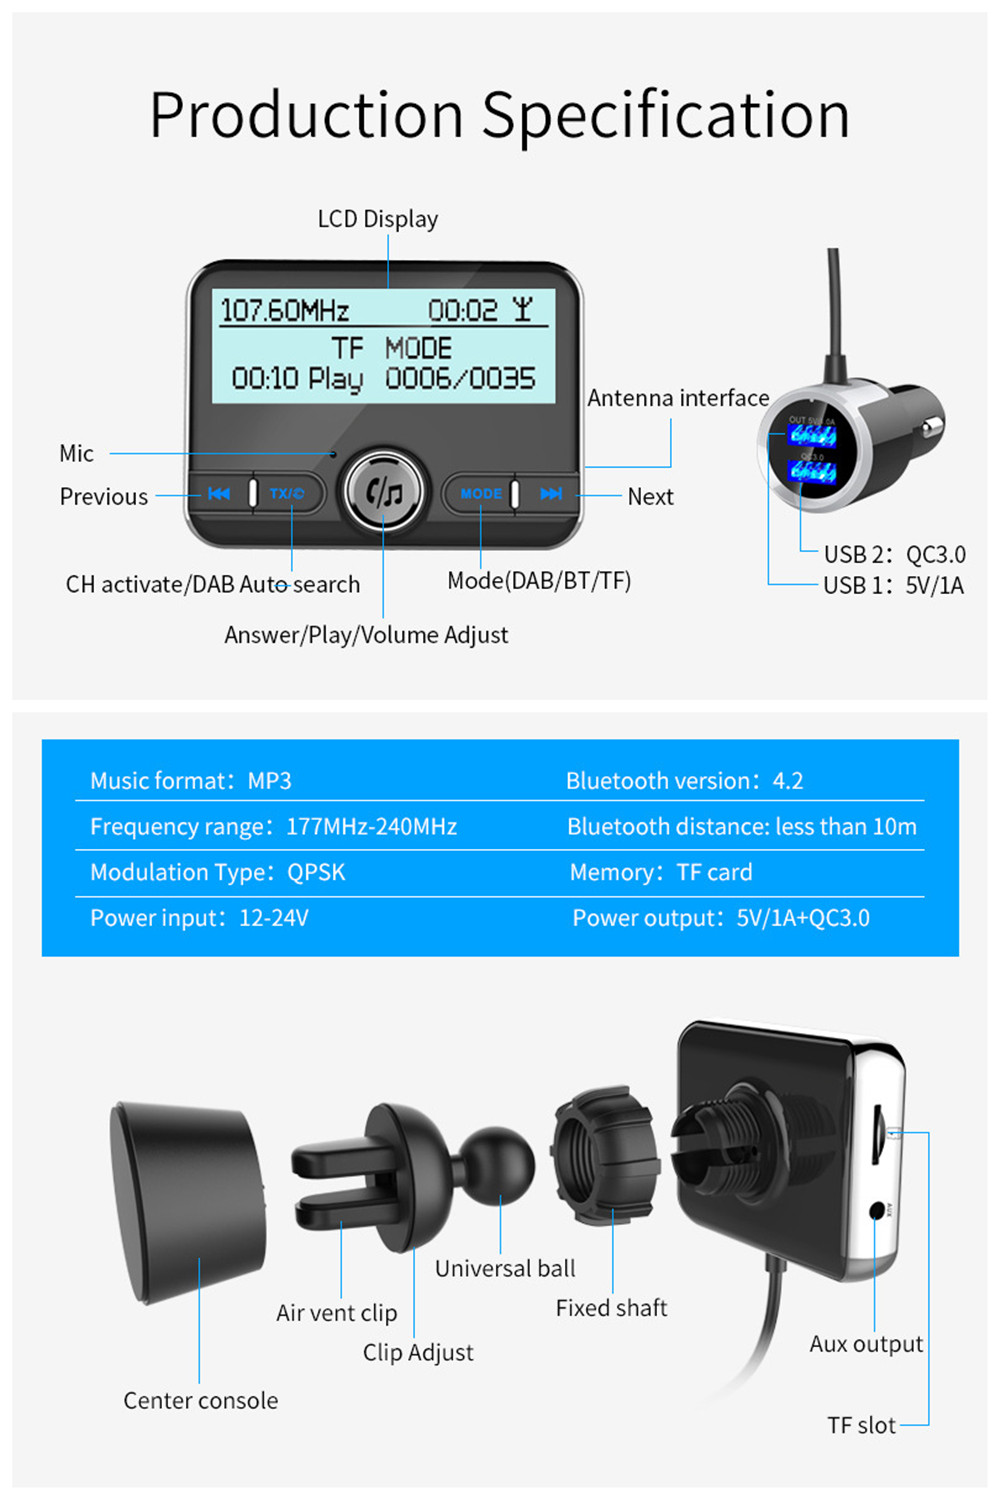 DAB002Car DAB Digital Radio Receiver Bluetooth Handsfree Car MP3 FM Transmitter